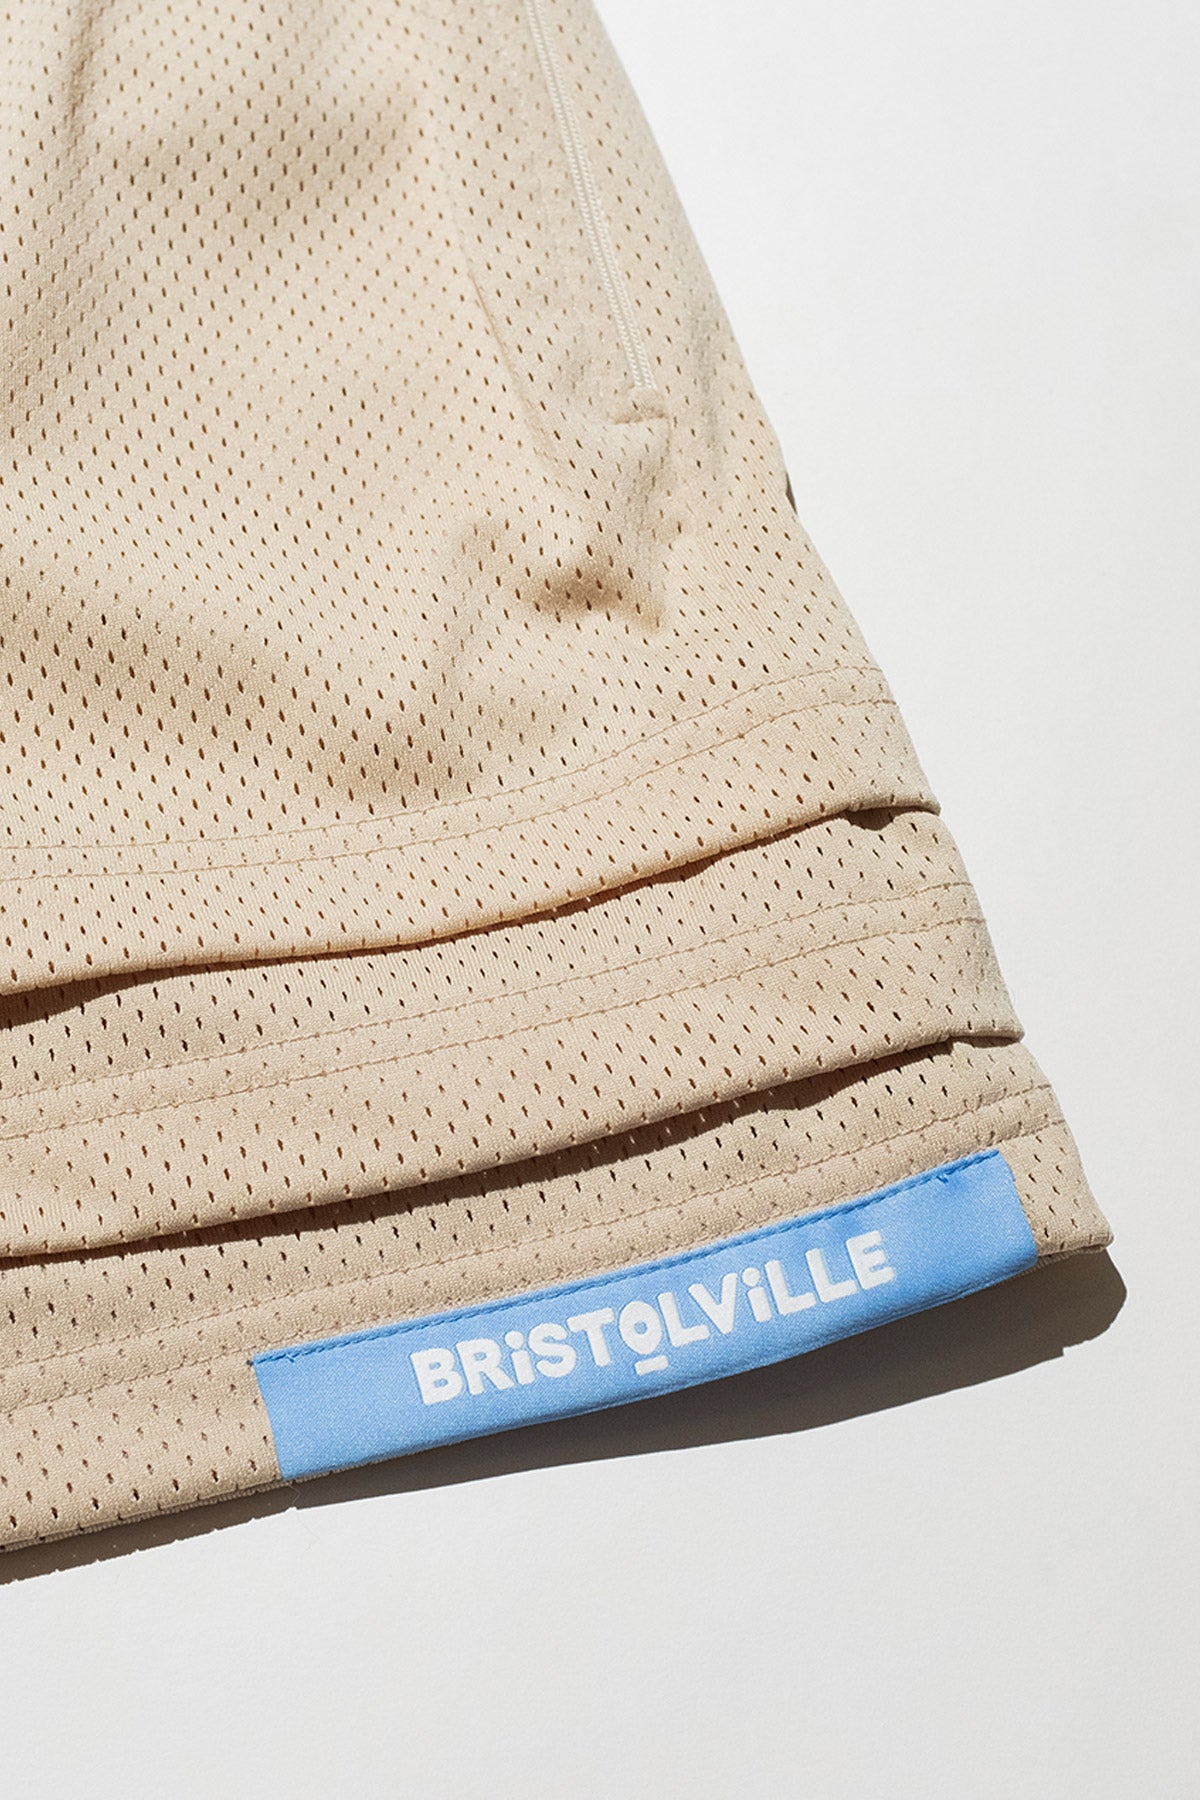 ‘Bristolville' Triple Hem Short